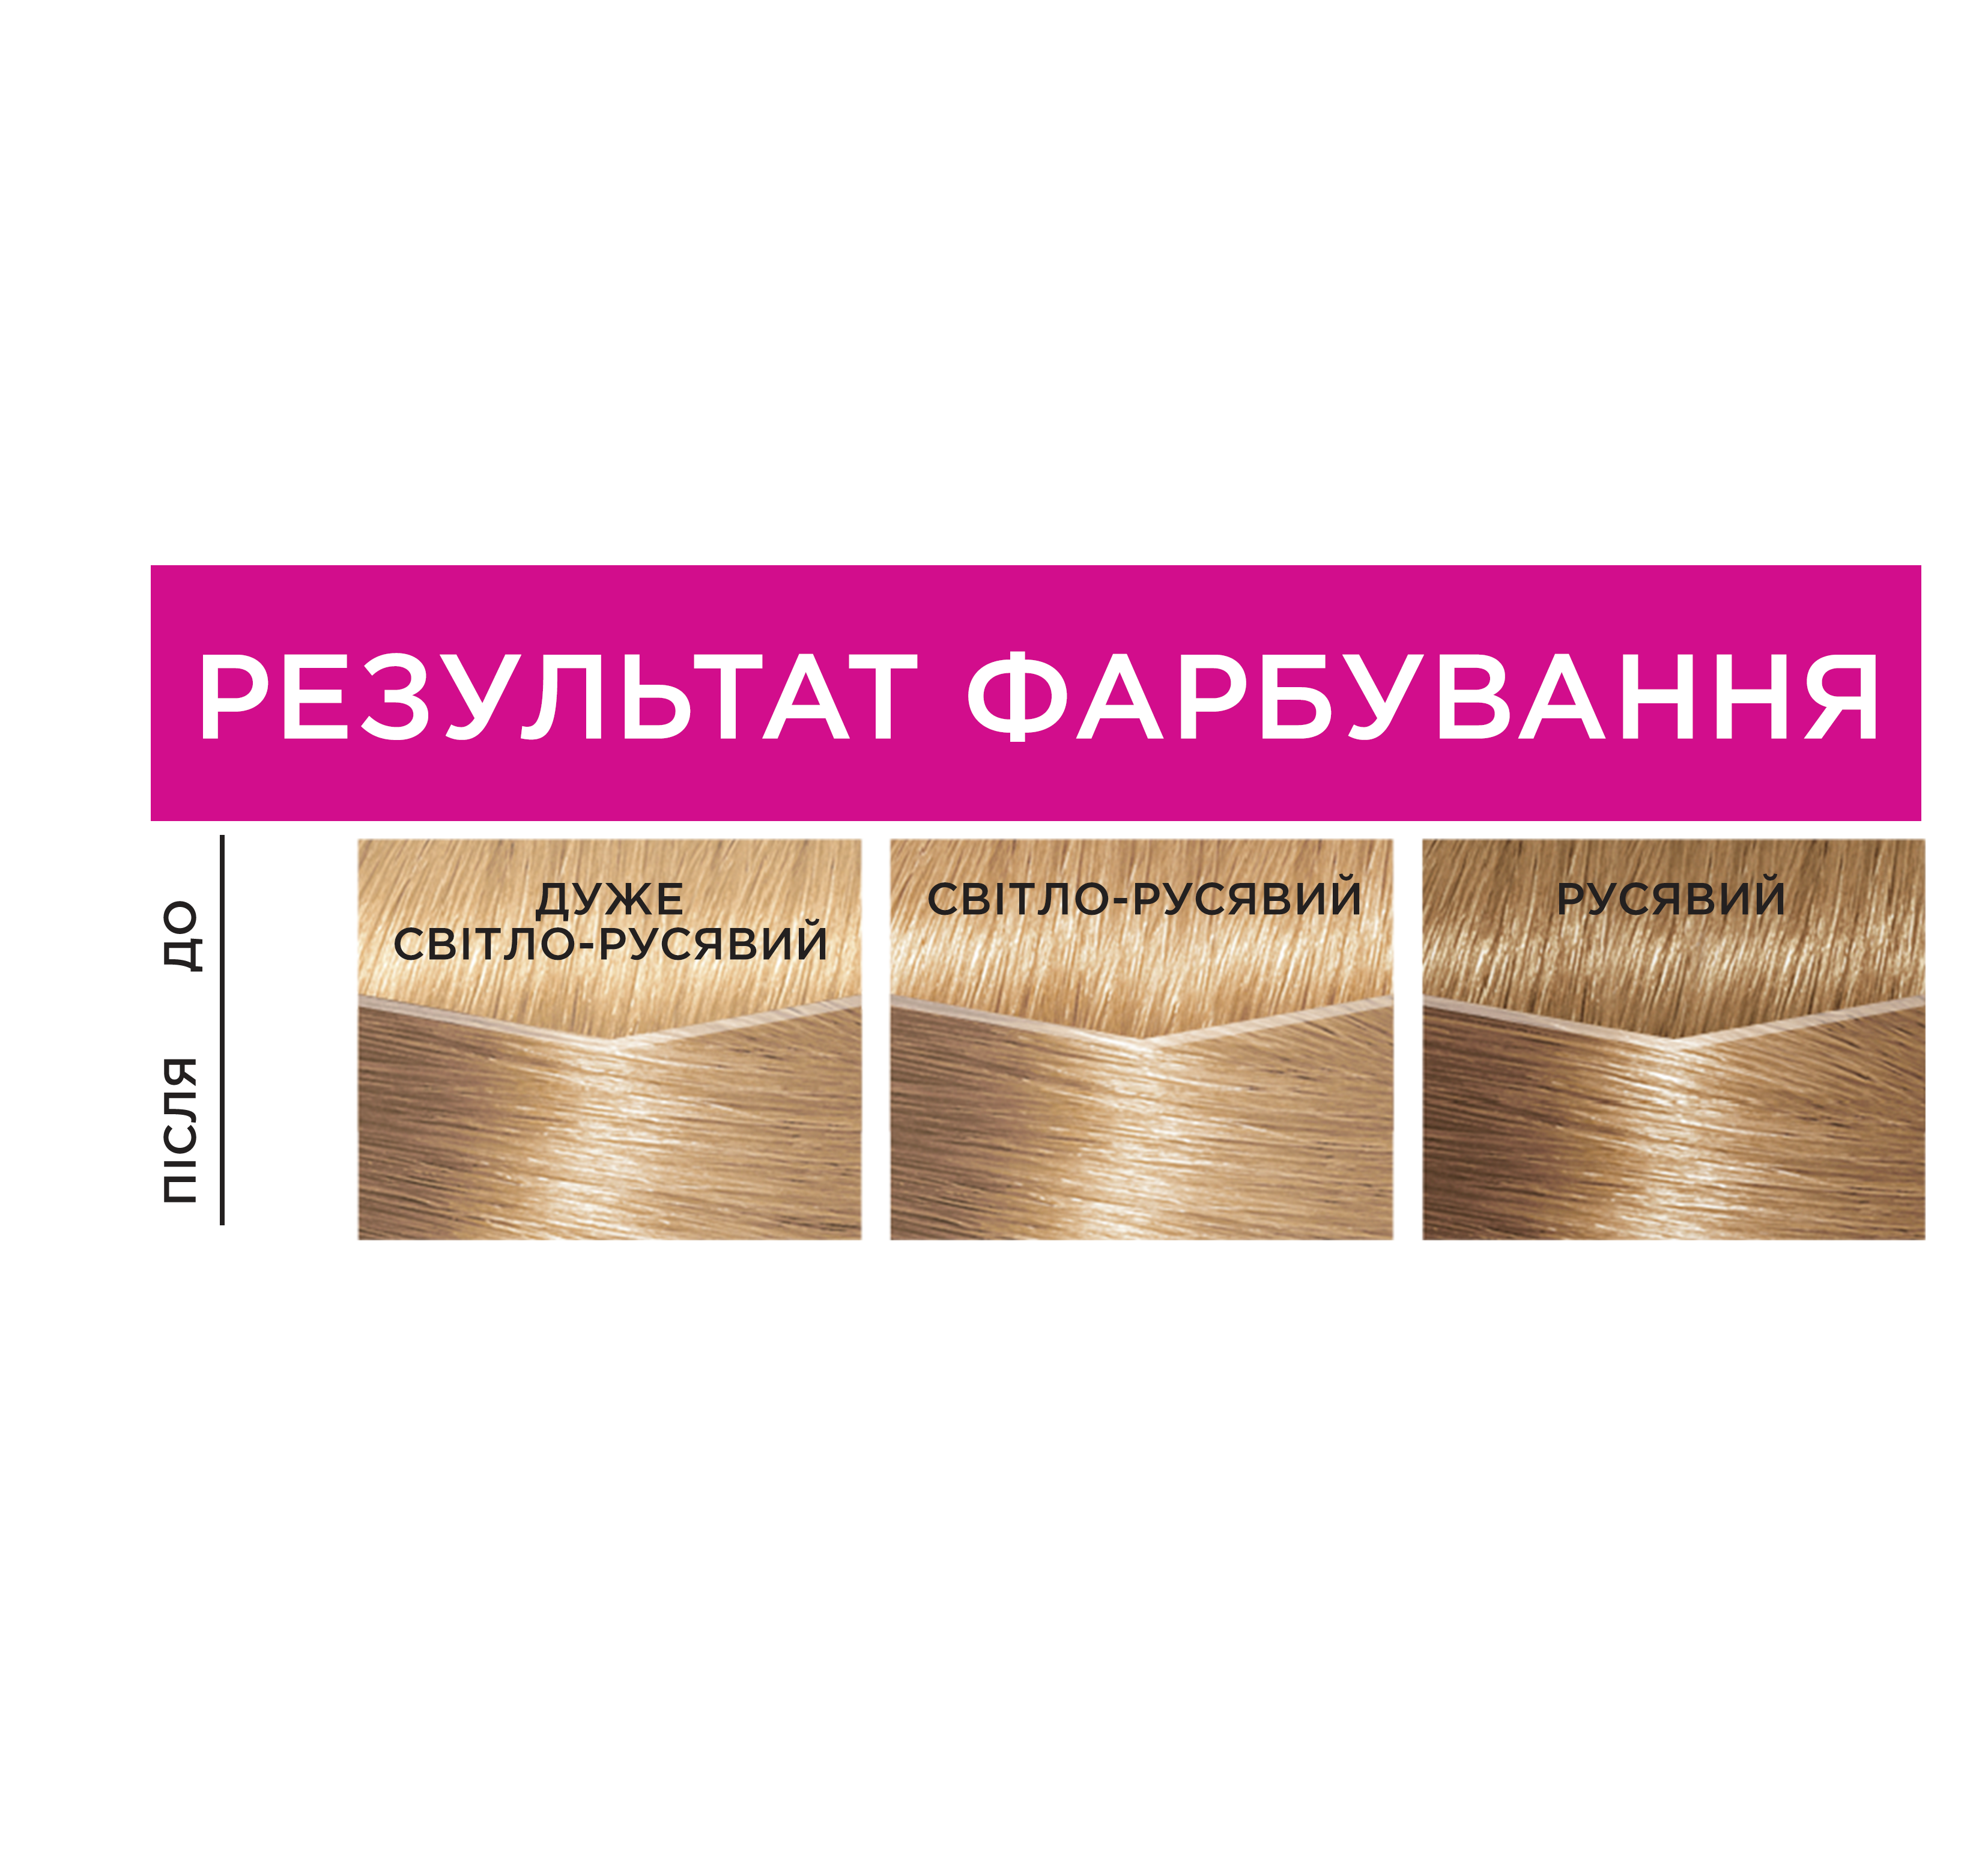 Фарба-догляд для волосся без аміаку L'Oreal Paris Casting Creme Gloss, відтінок 910 (Дуже світло-русявий попелястий), 120 мл (A5777276) - фото 4